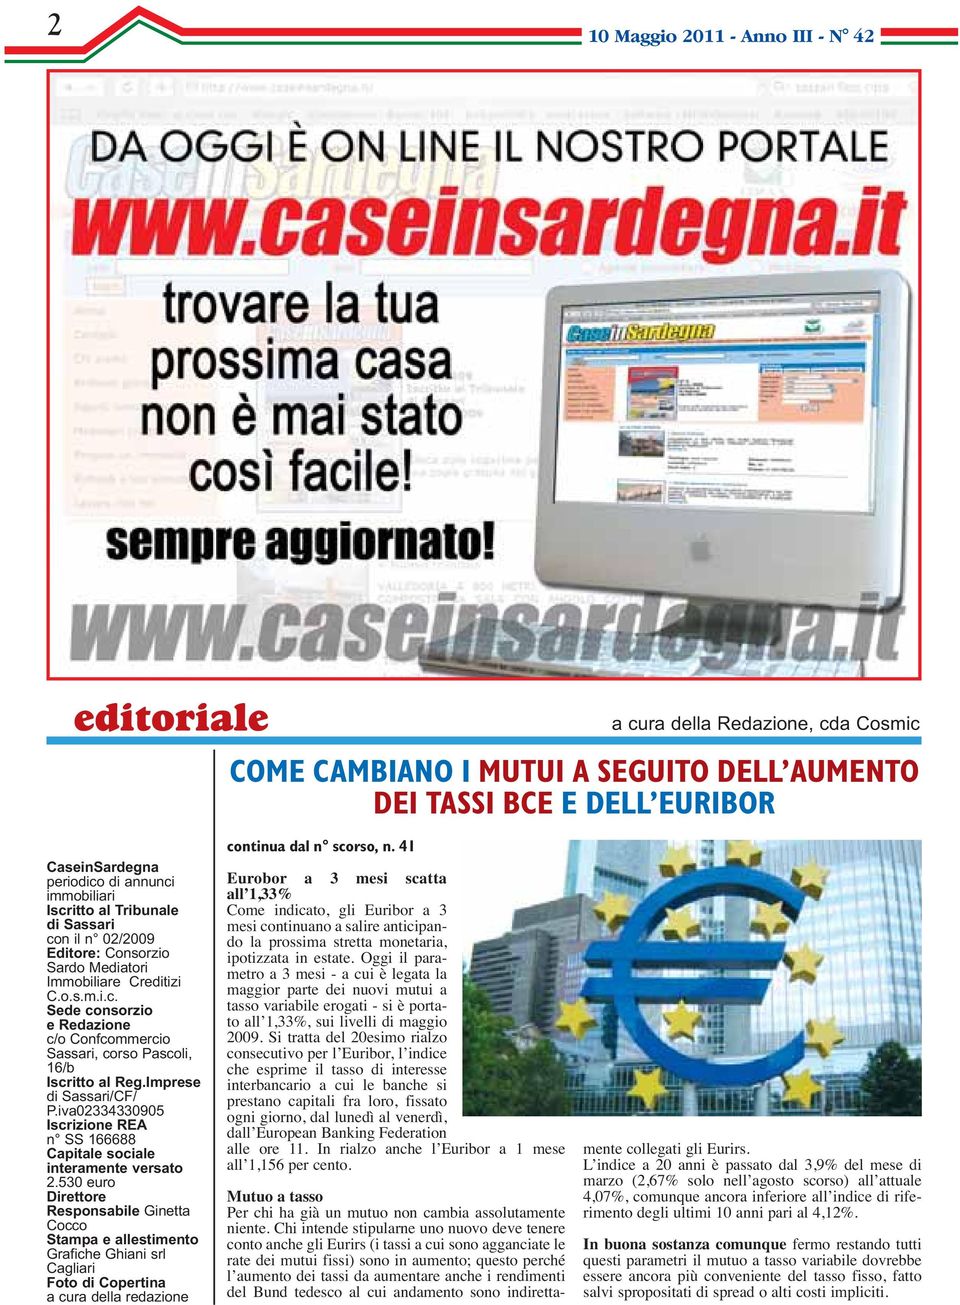 Imprese di Sassari/CF/ P.iva02334330905 Iscrizione REA n SS 166688 Capitale sociale interamente versato 2.